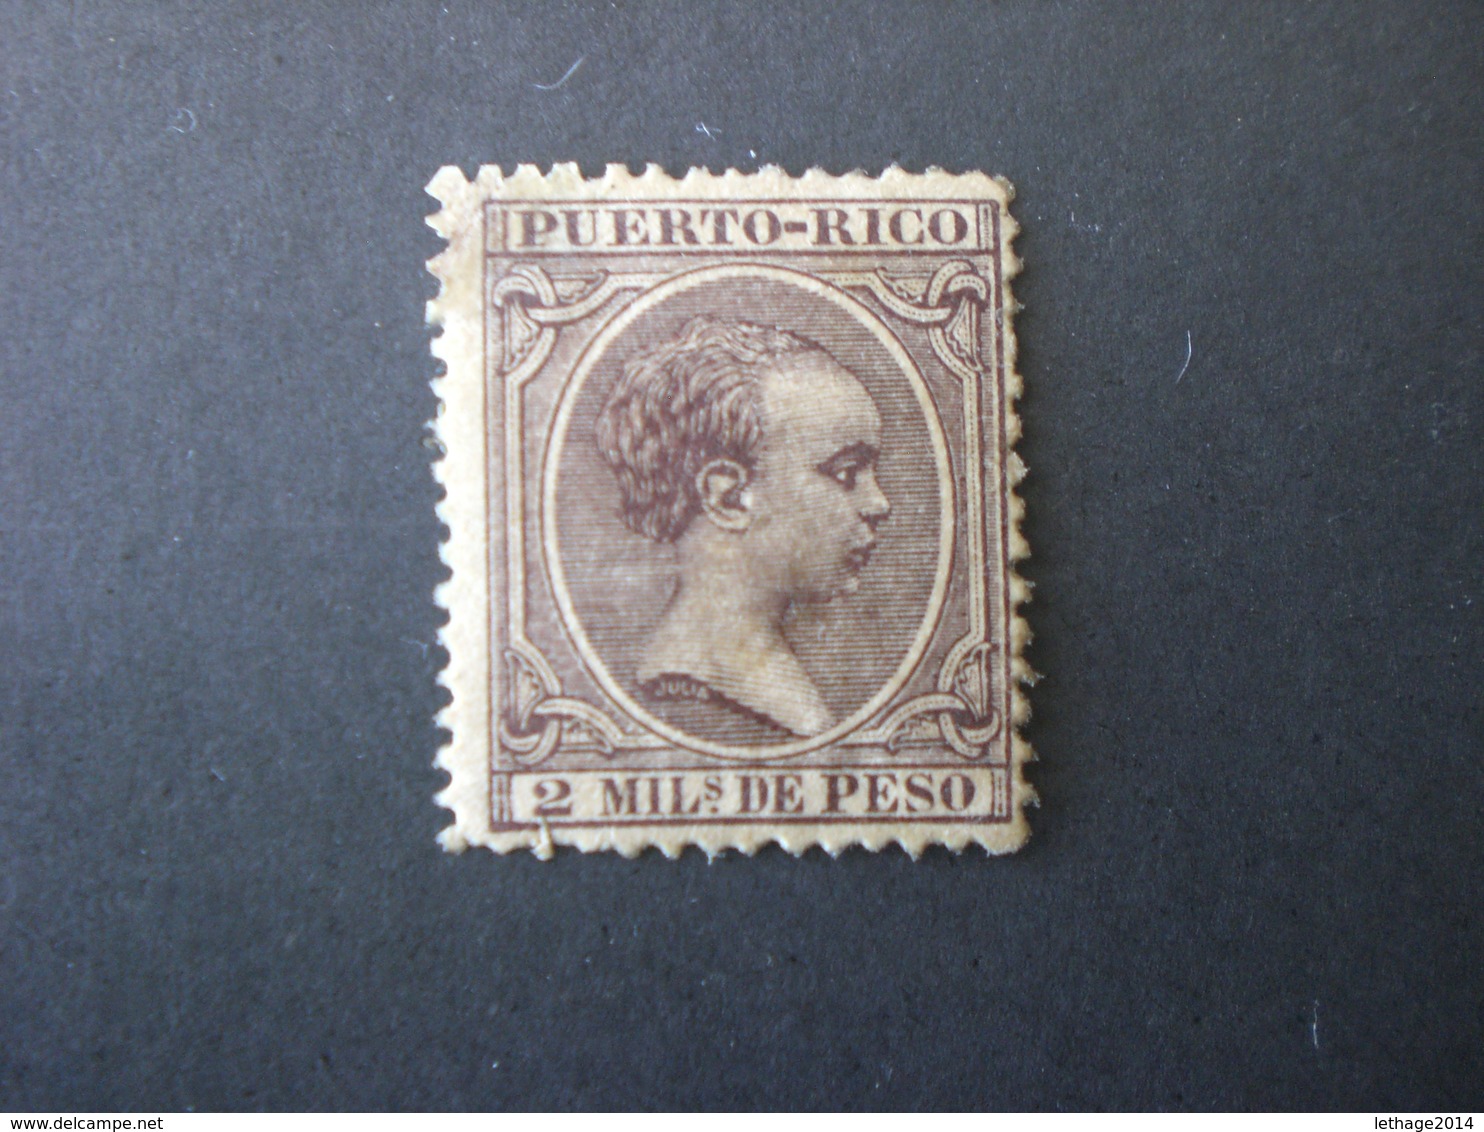 PORTO RICO PUERTO RICO 1891 King Alfonso XII Of Spain MHL - Puerto Rico